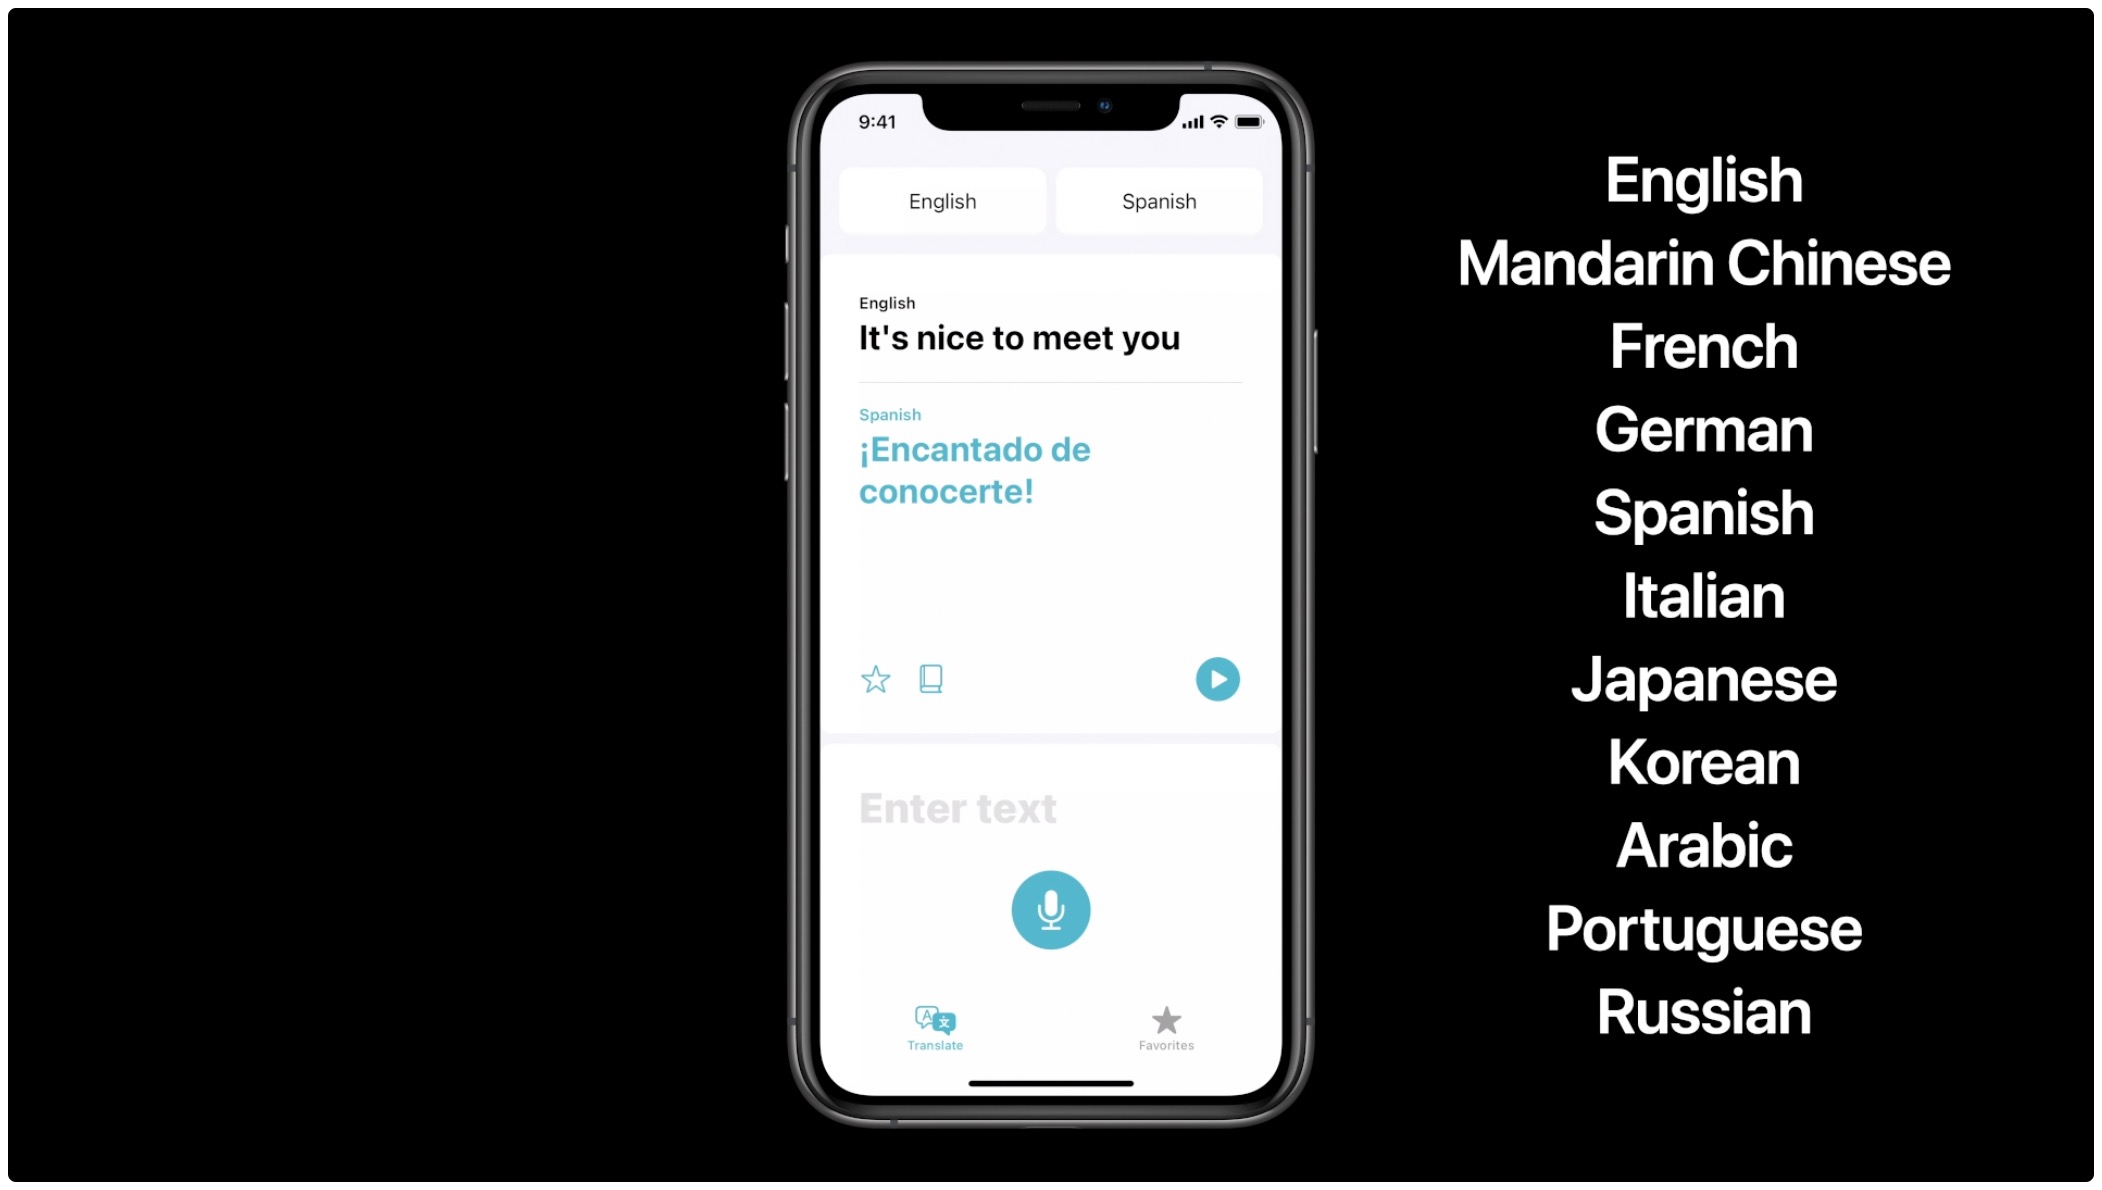 Download languages Apple Translate app - WWDC slide